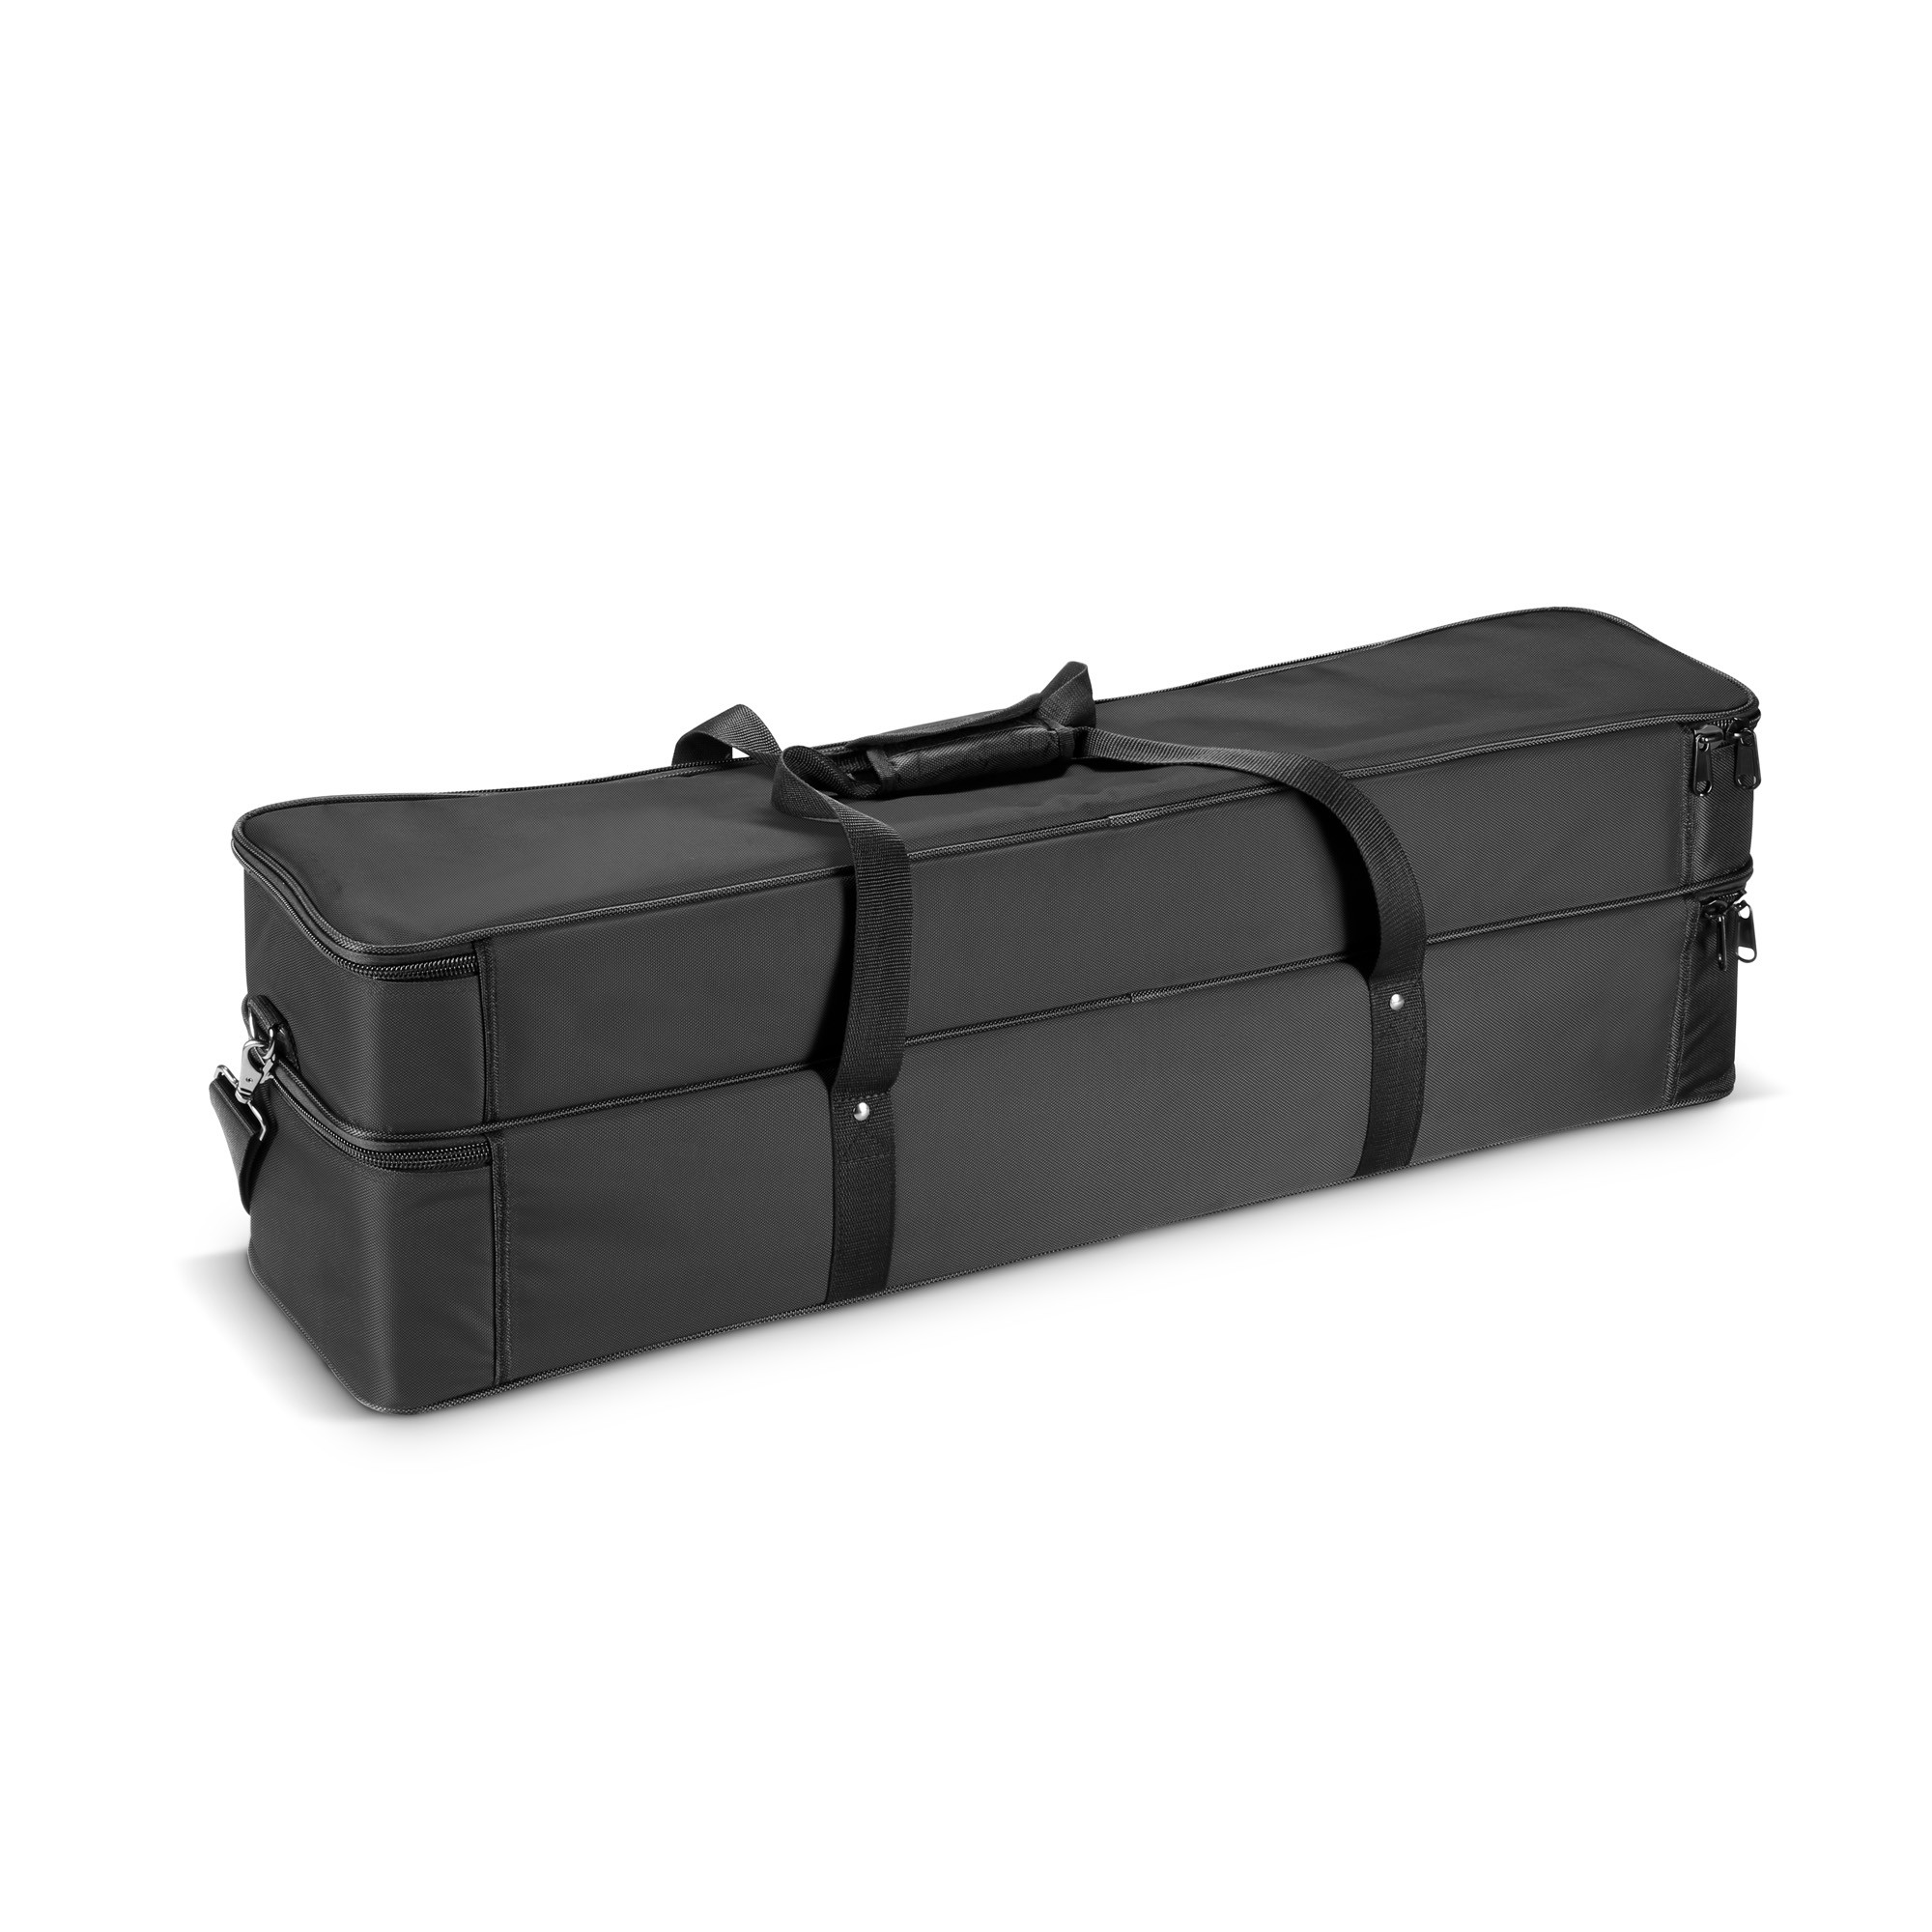 Ld Systems Curv 500 Ts Sat Bag - Bag for speakers & subwoofer - Variation 3